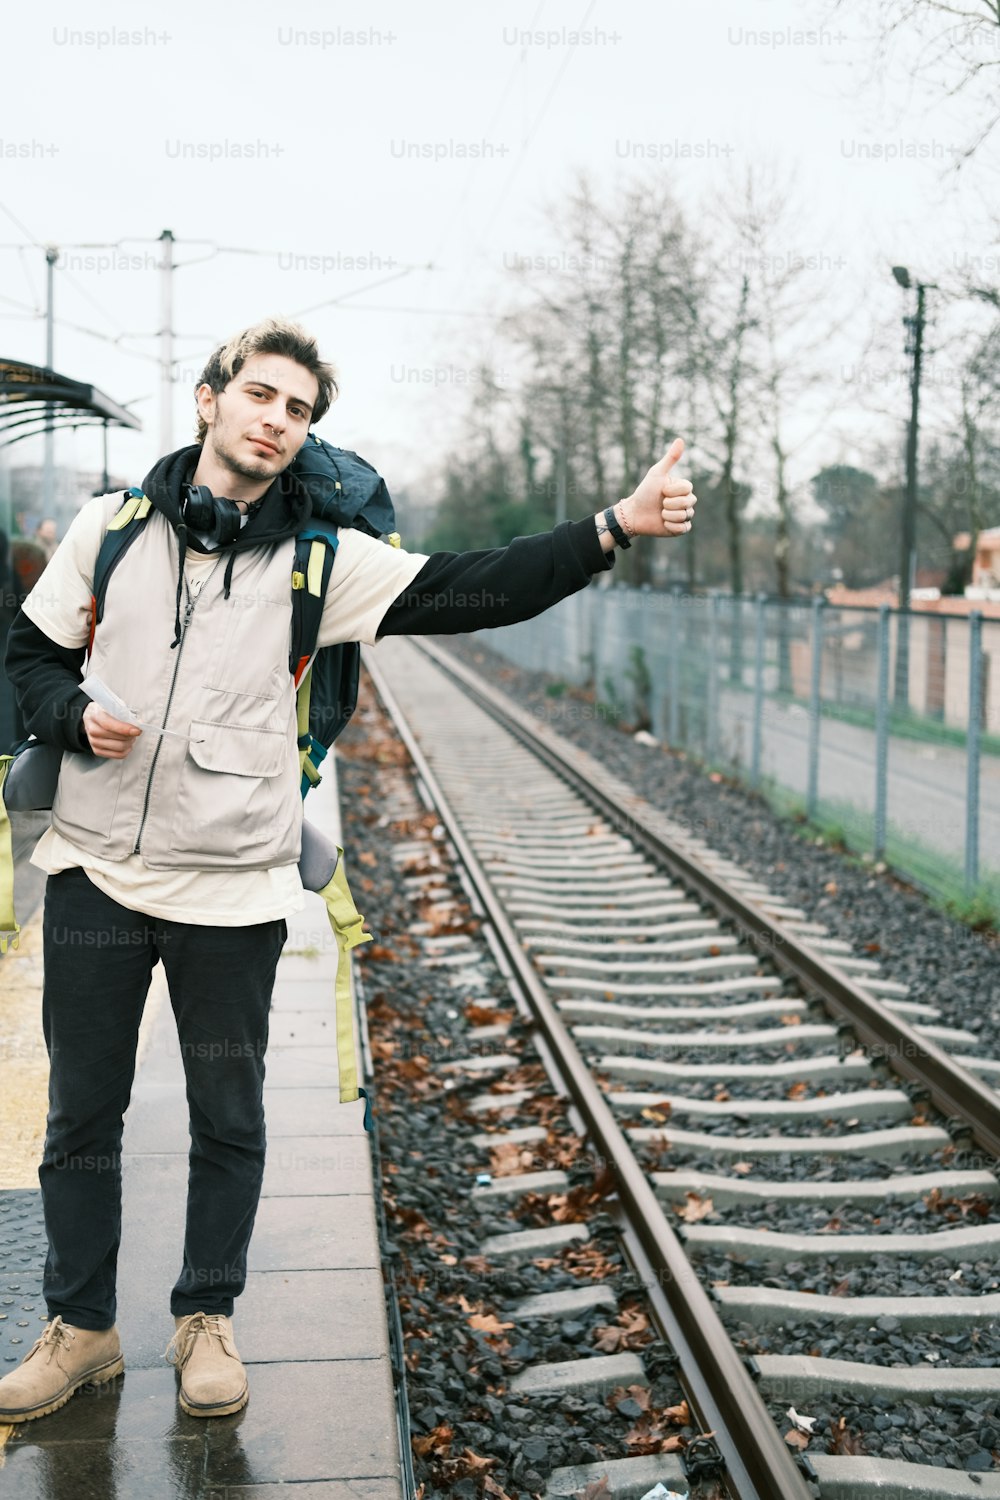 Un homme debout sur une voie ferrée levant le pouce